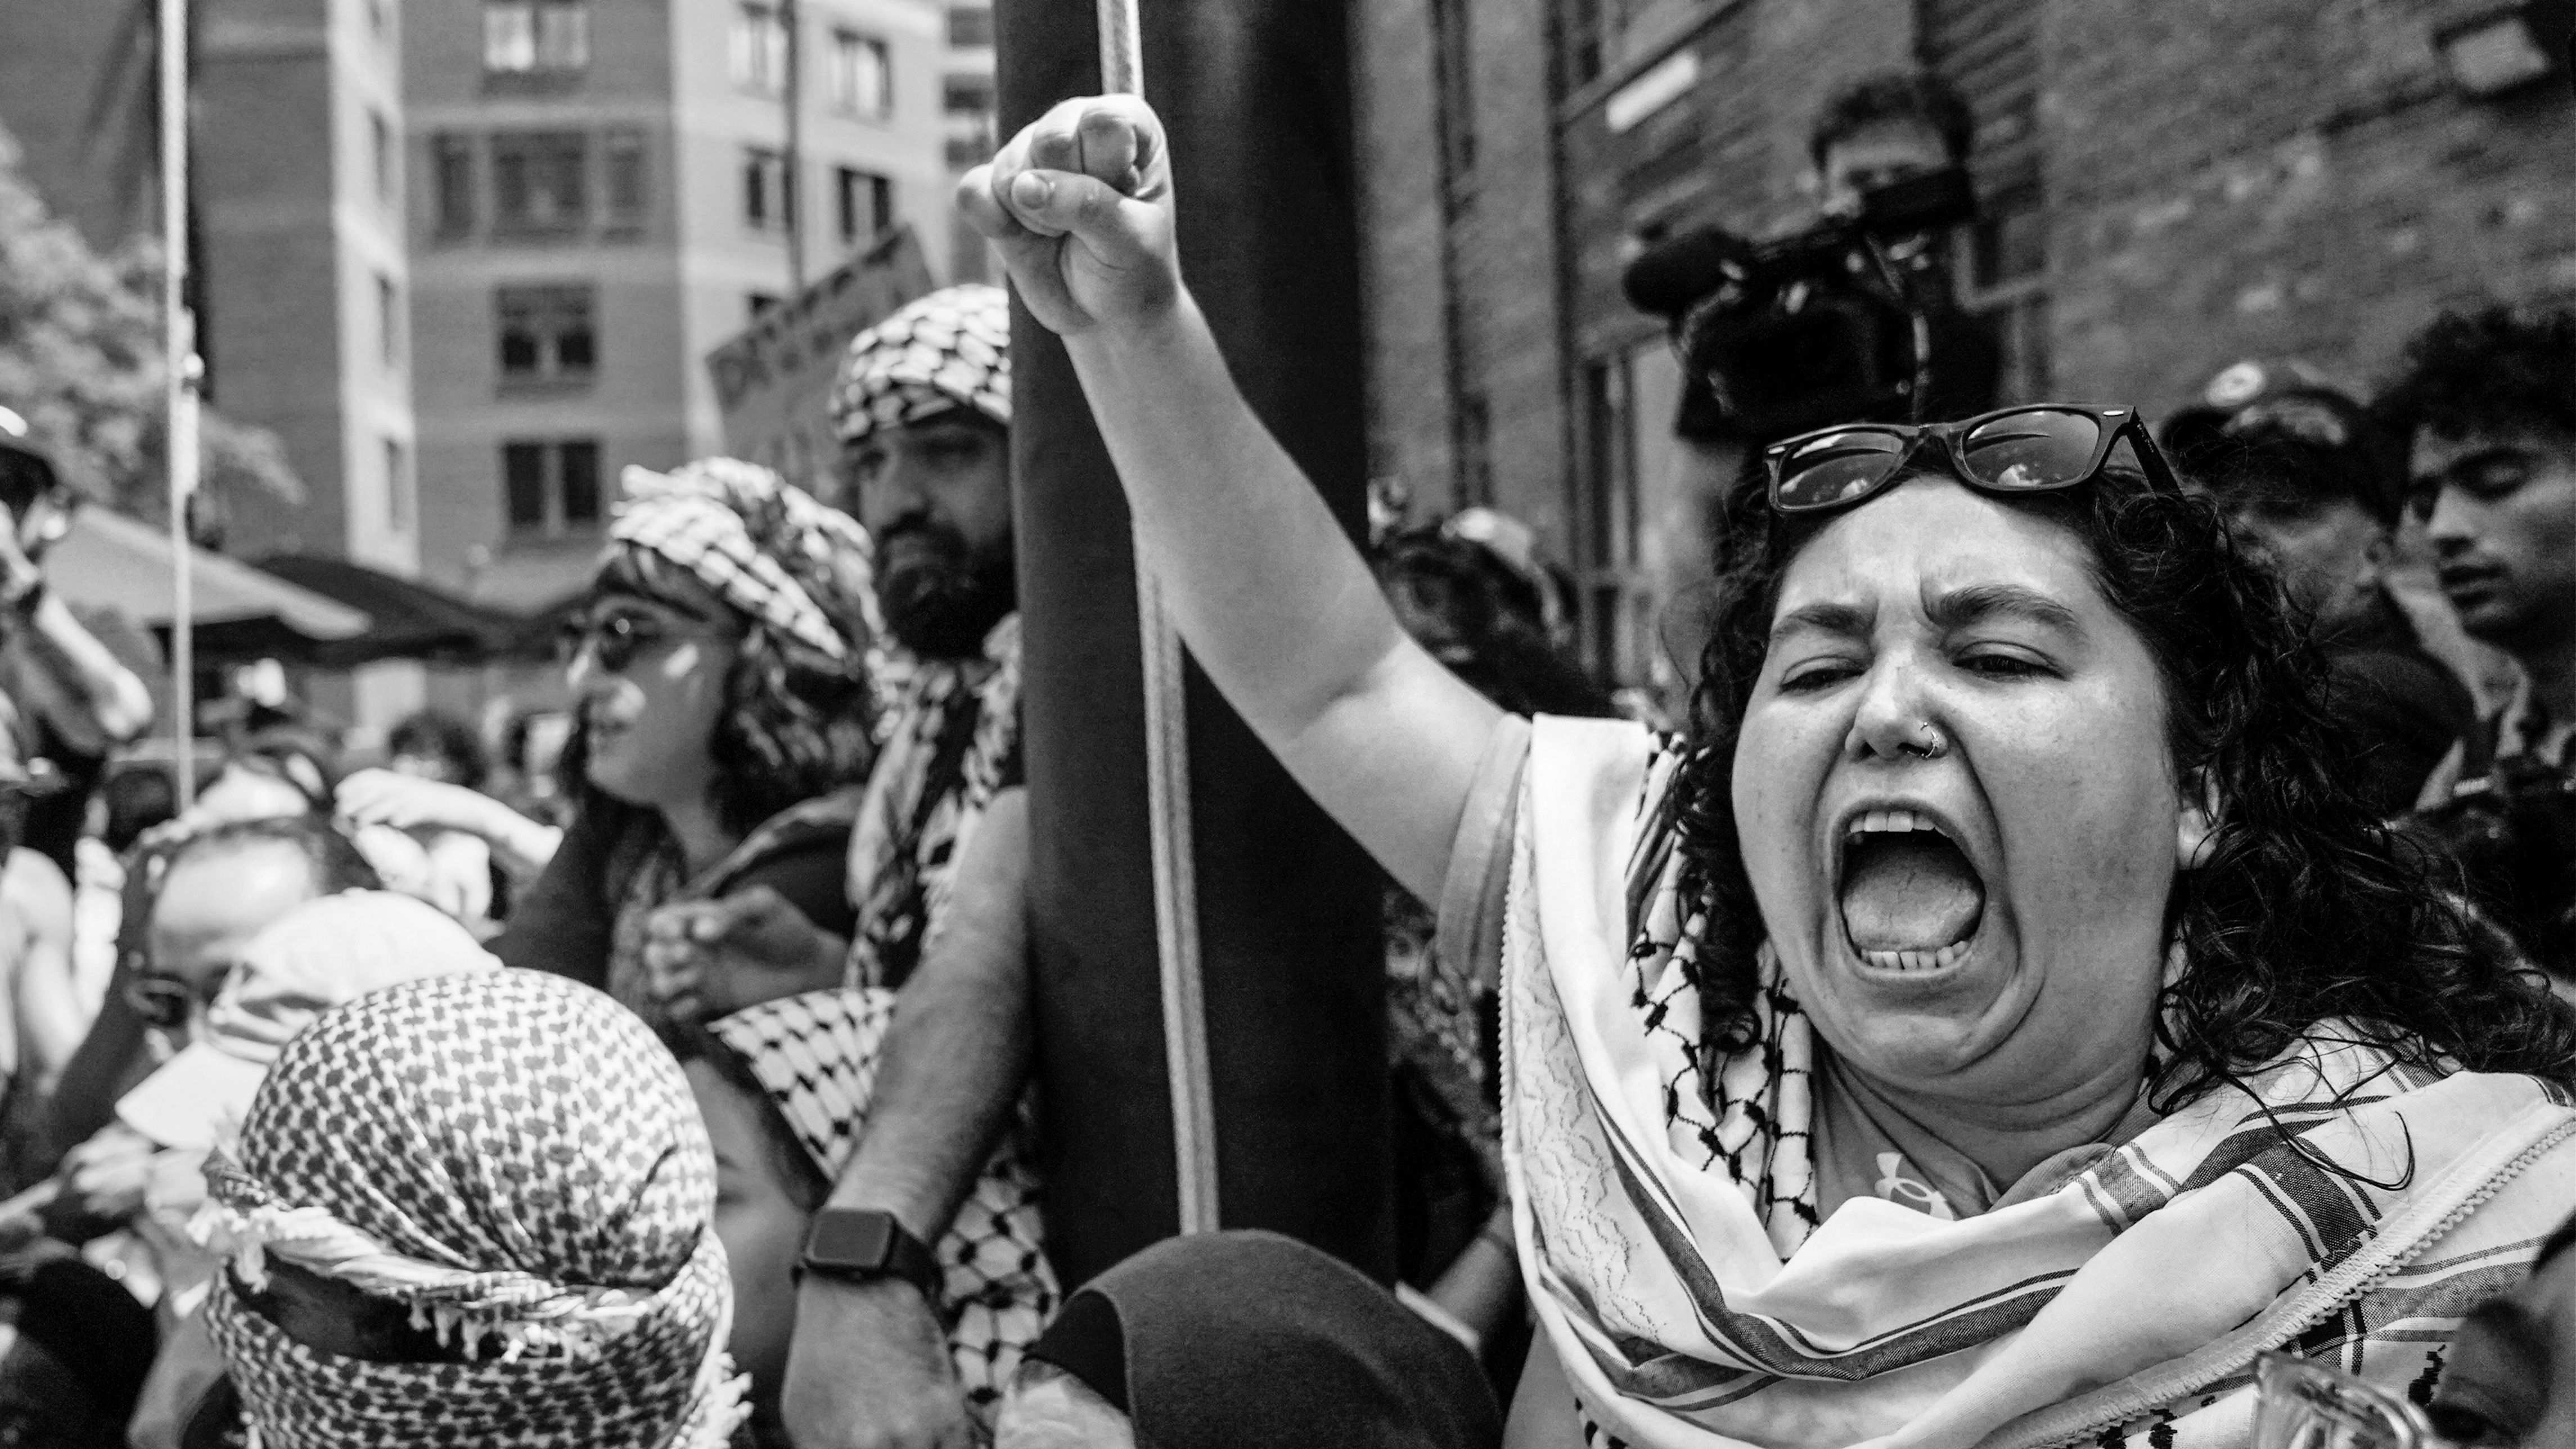 what those pro-palestinian chants mean